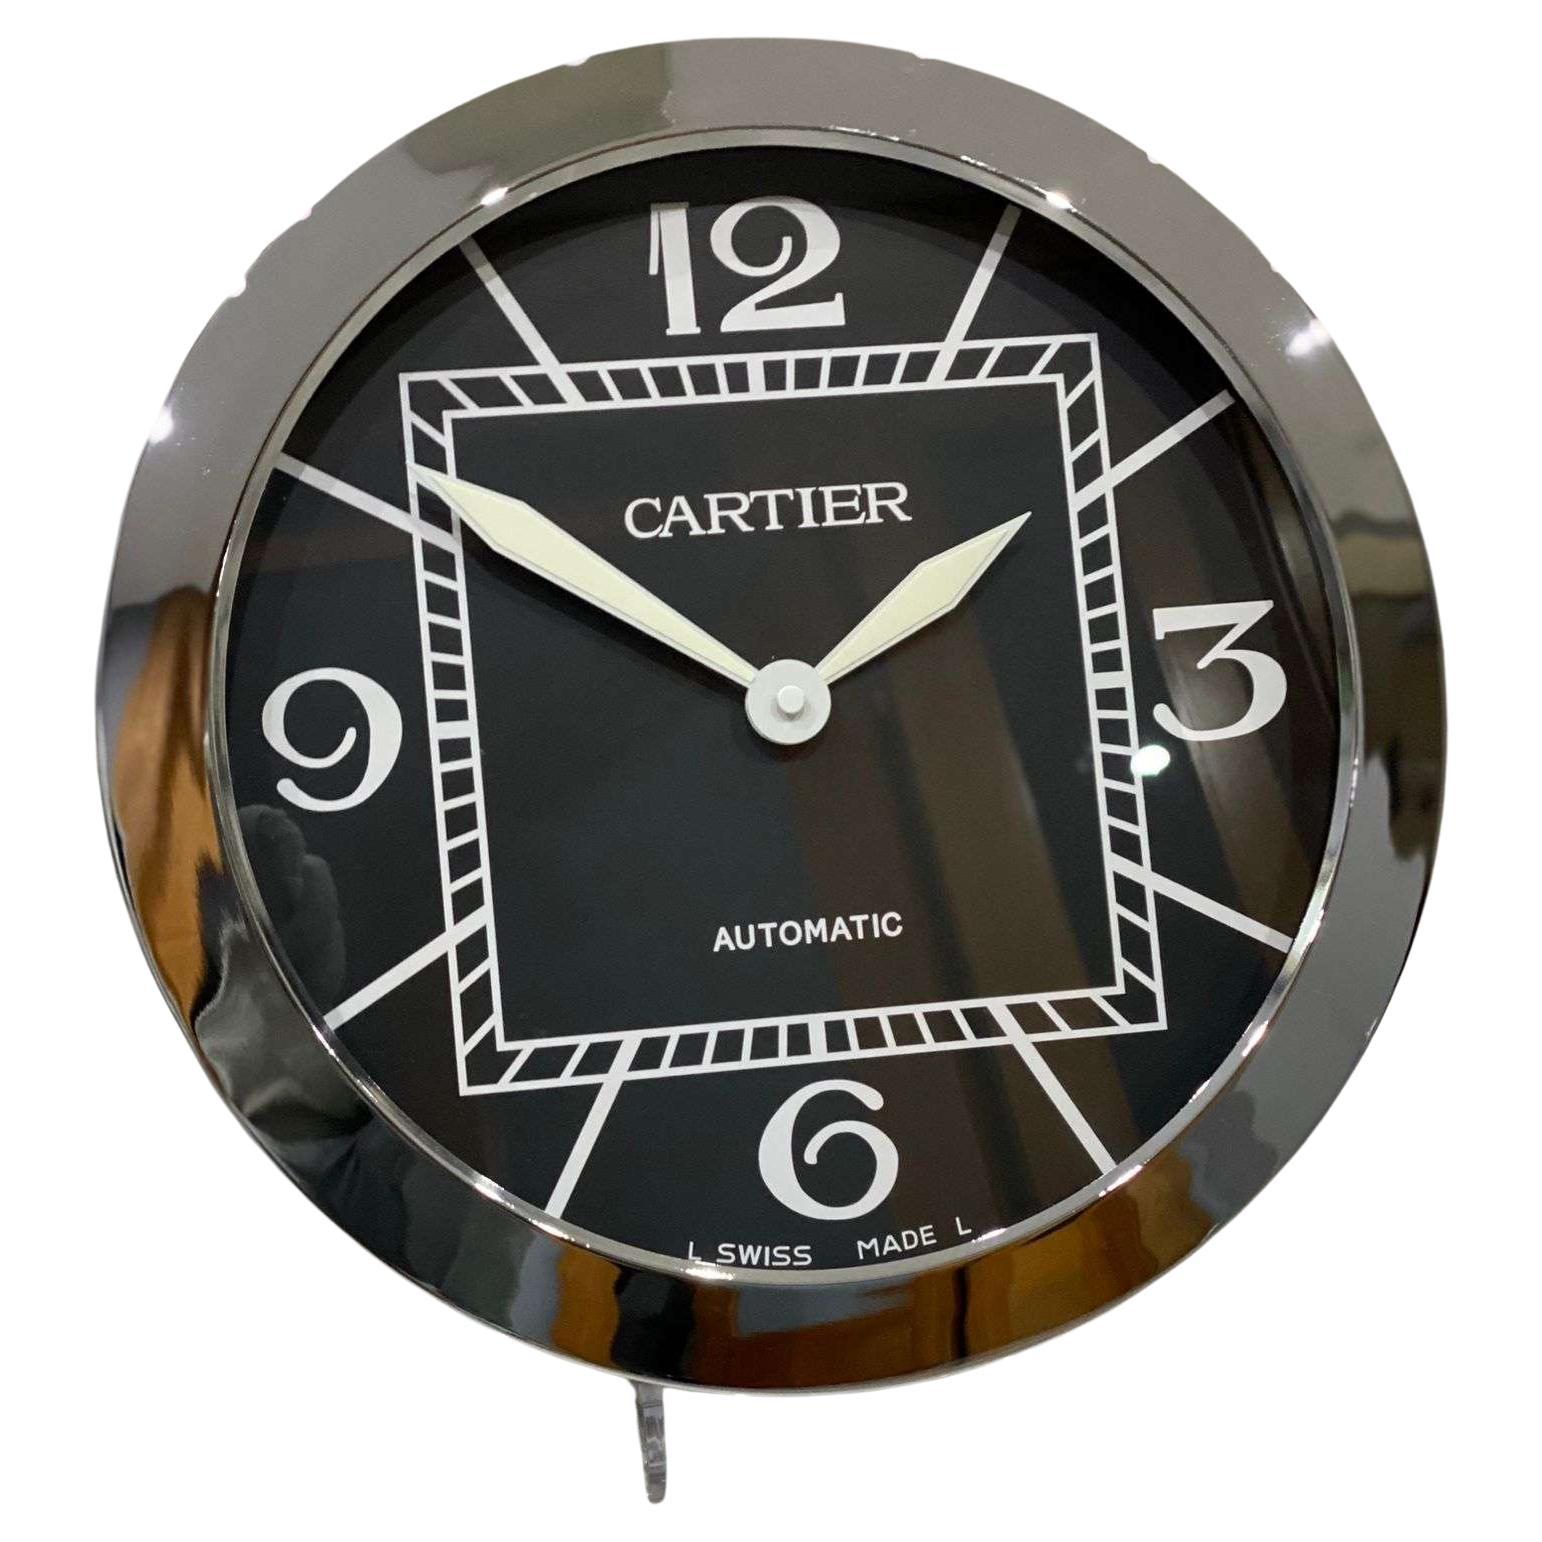 Horloge murale Cartier officiellement certifiée argent, chromée et noire 